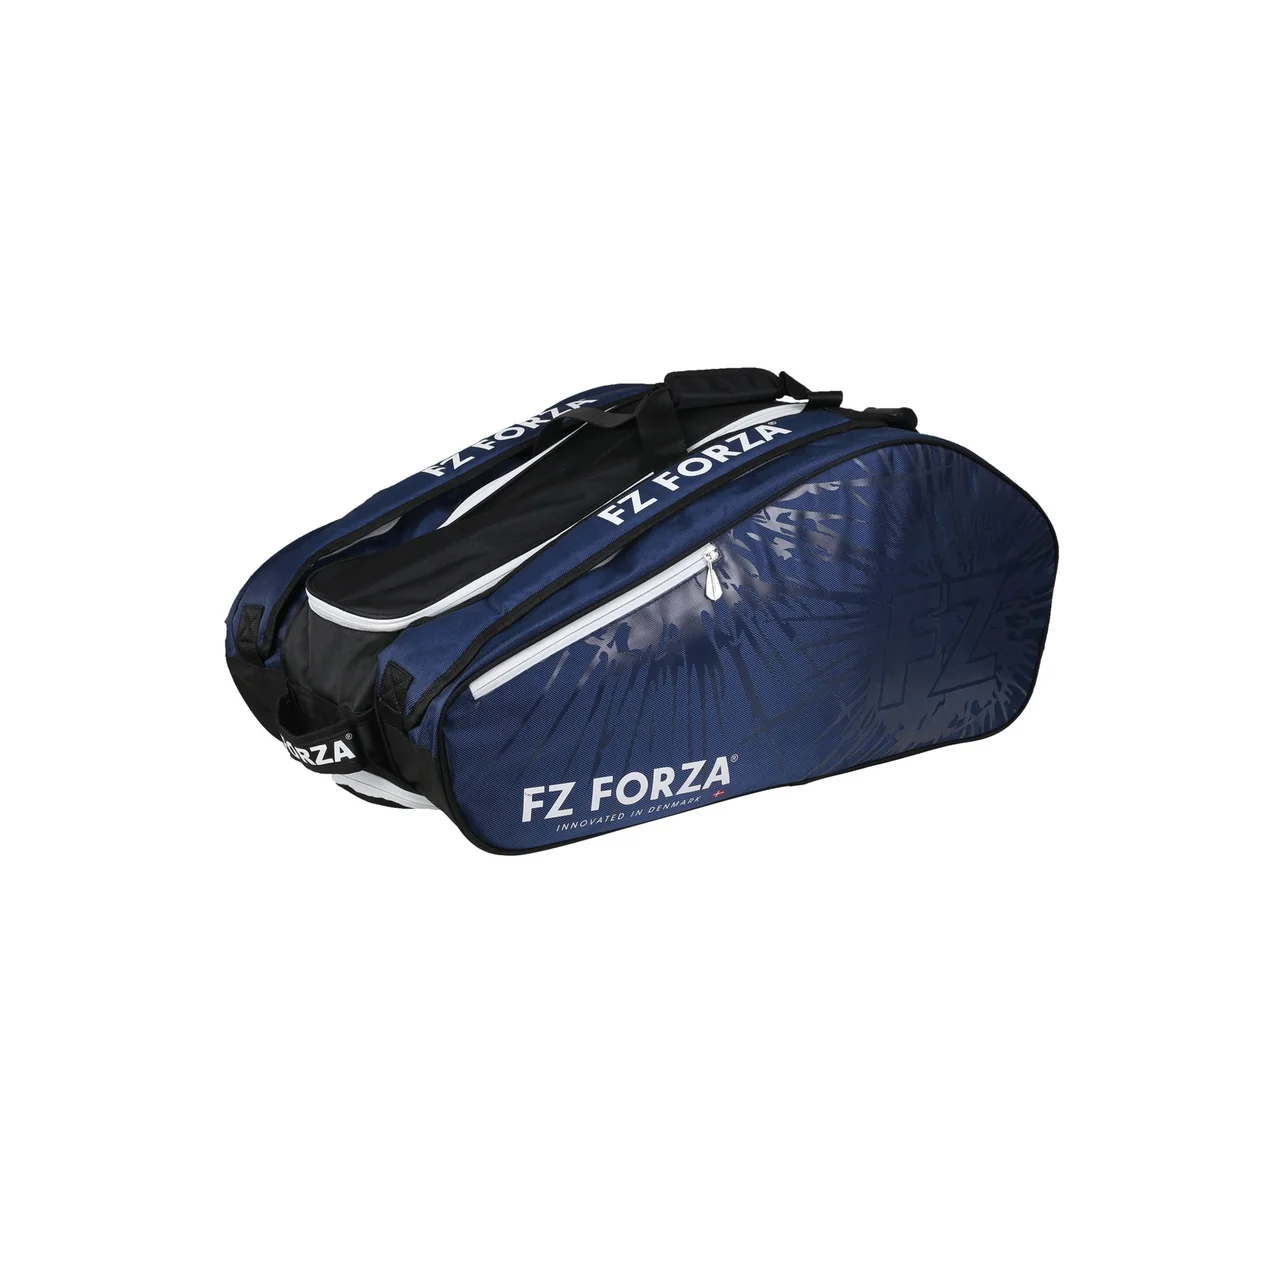 FZ Forza Blue Light Bag x15